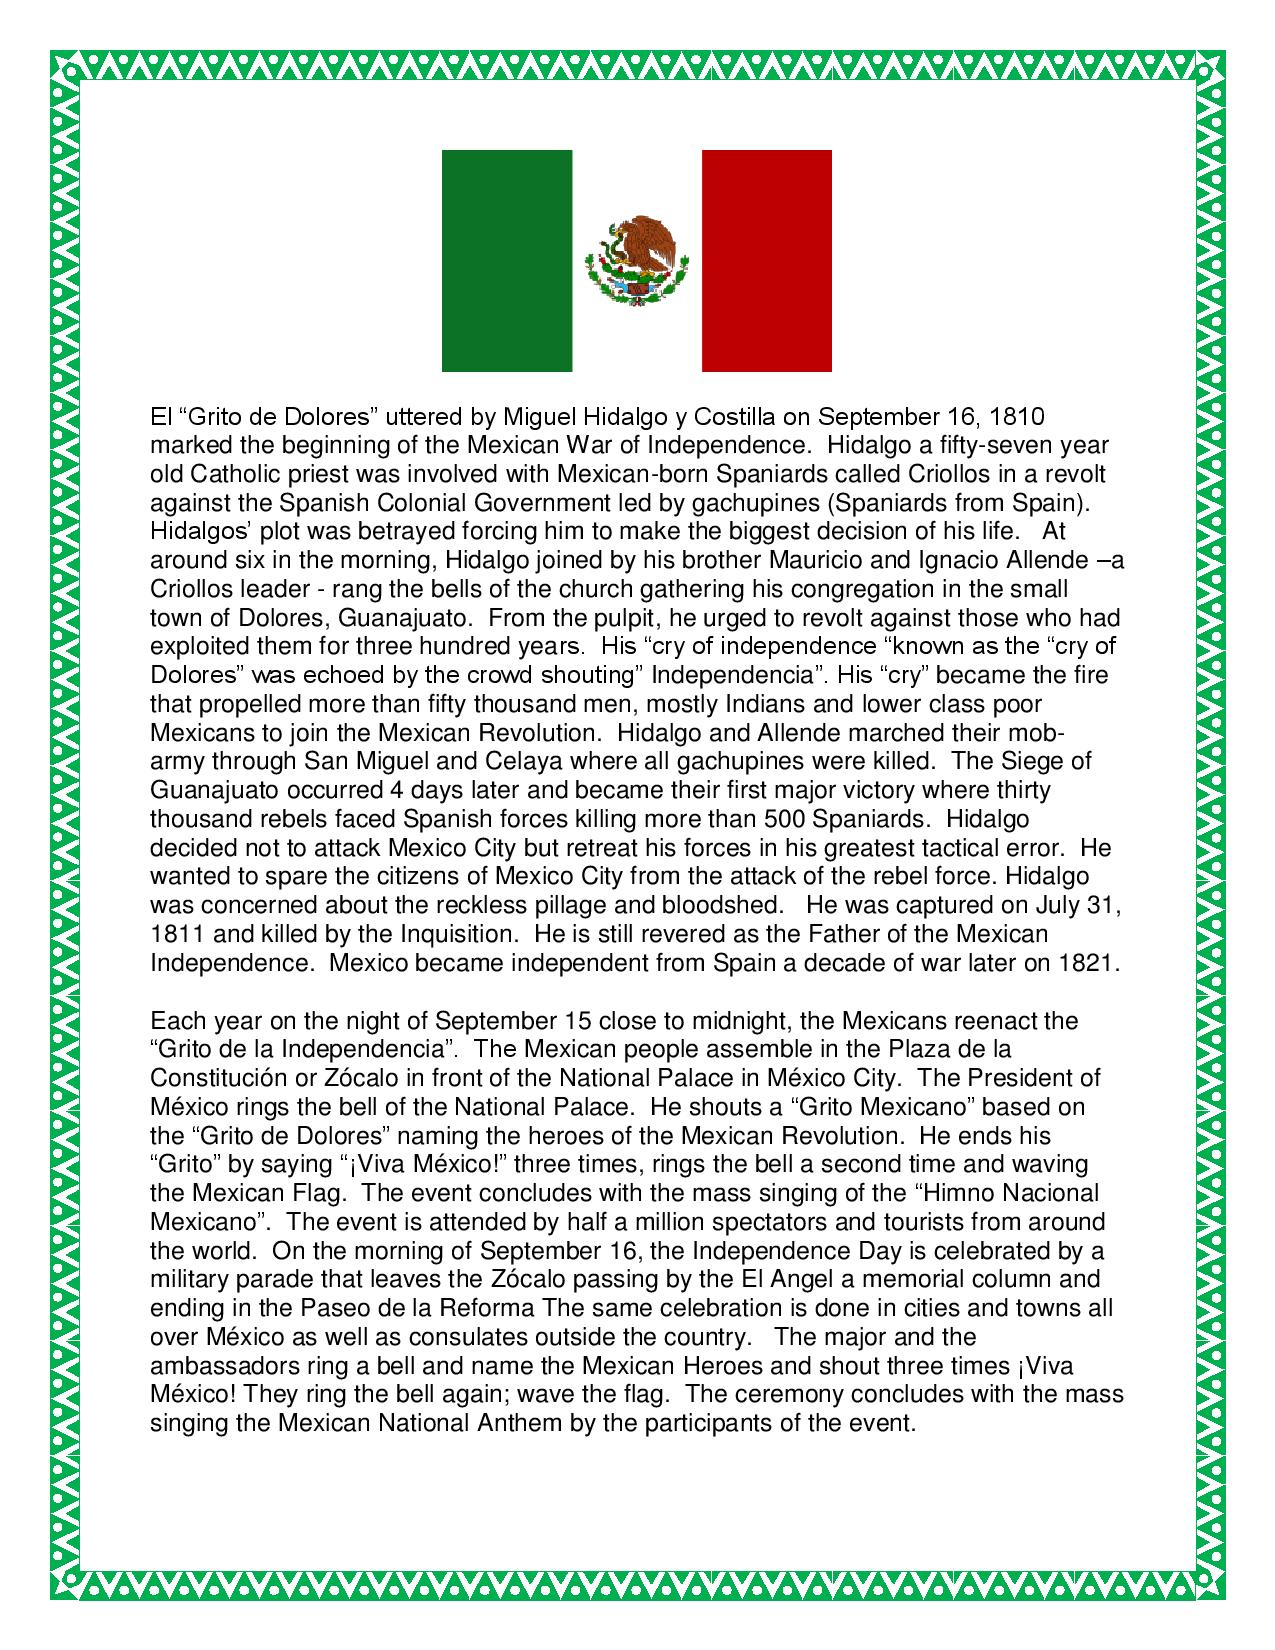 trip to mexico essay